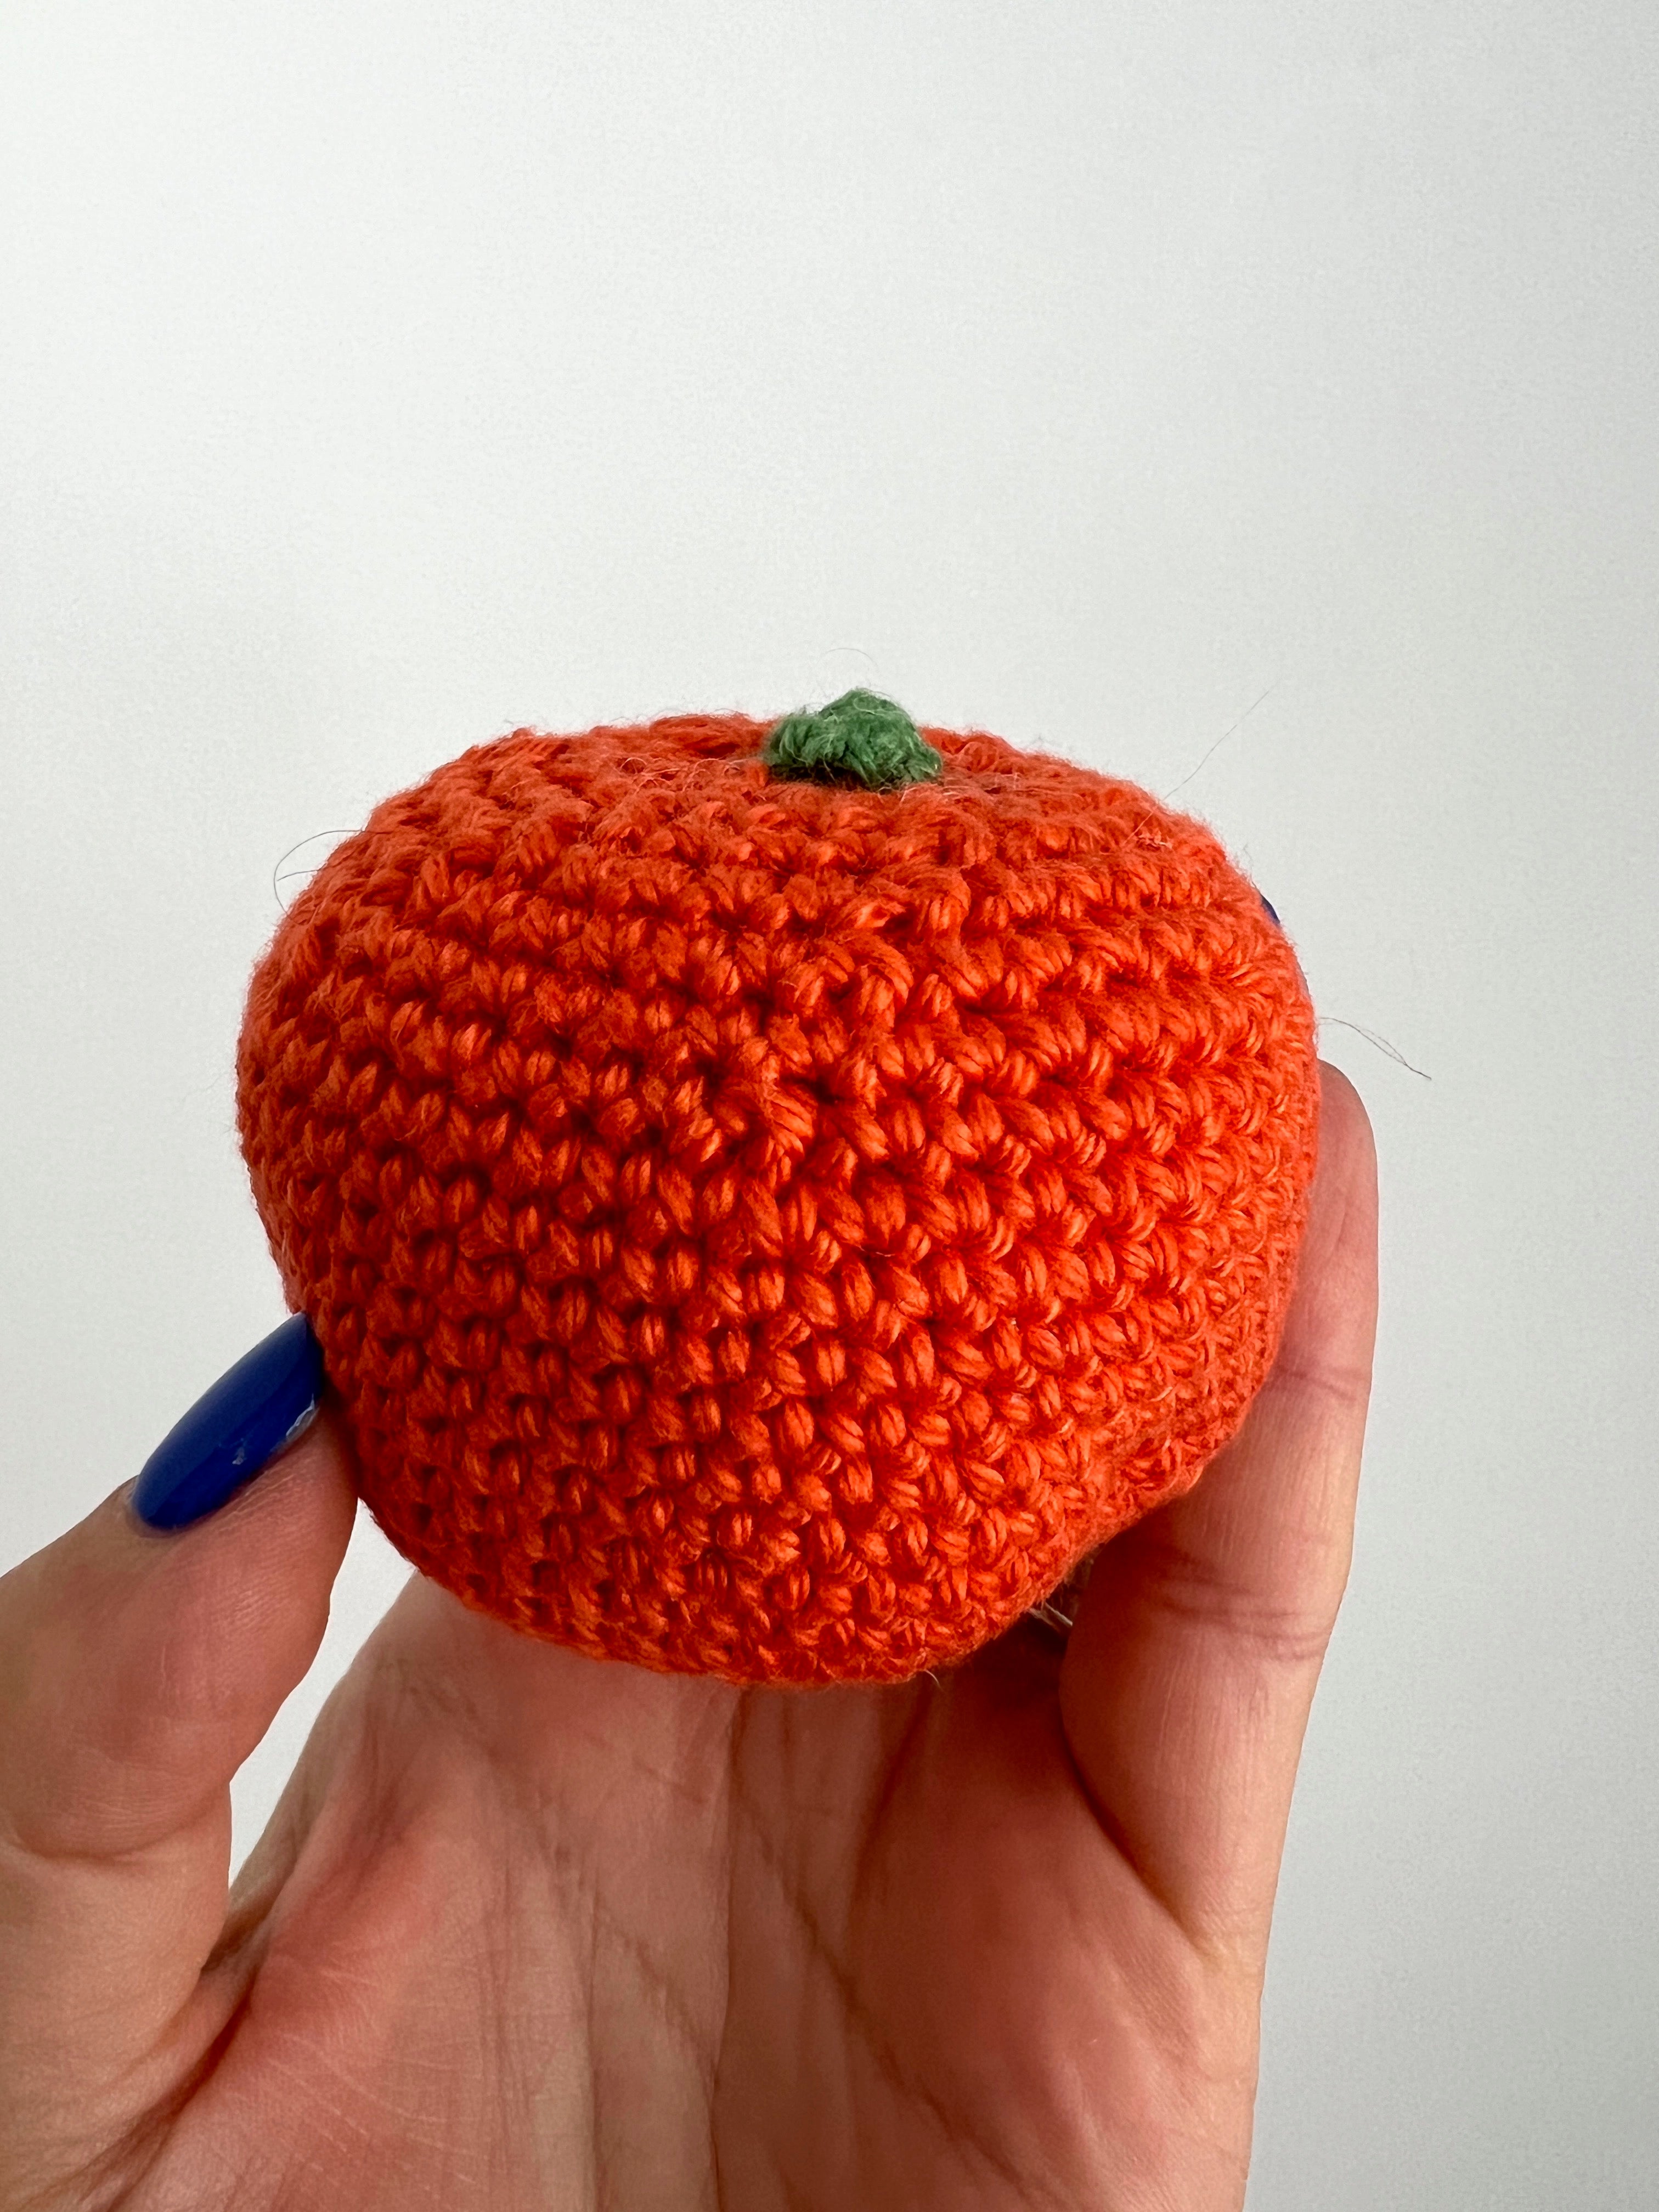 Handmade Crochet Fruit